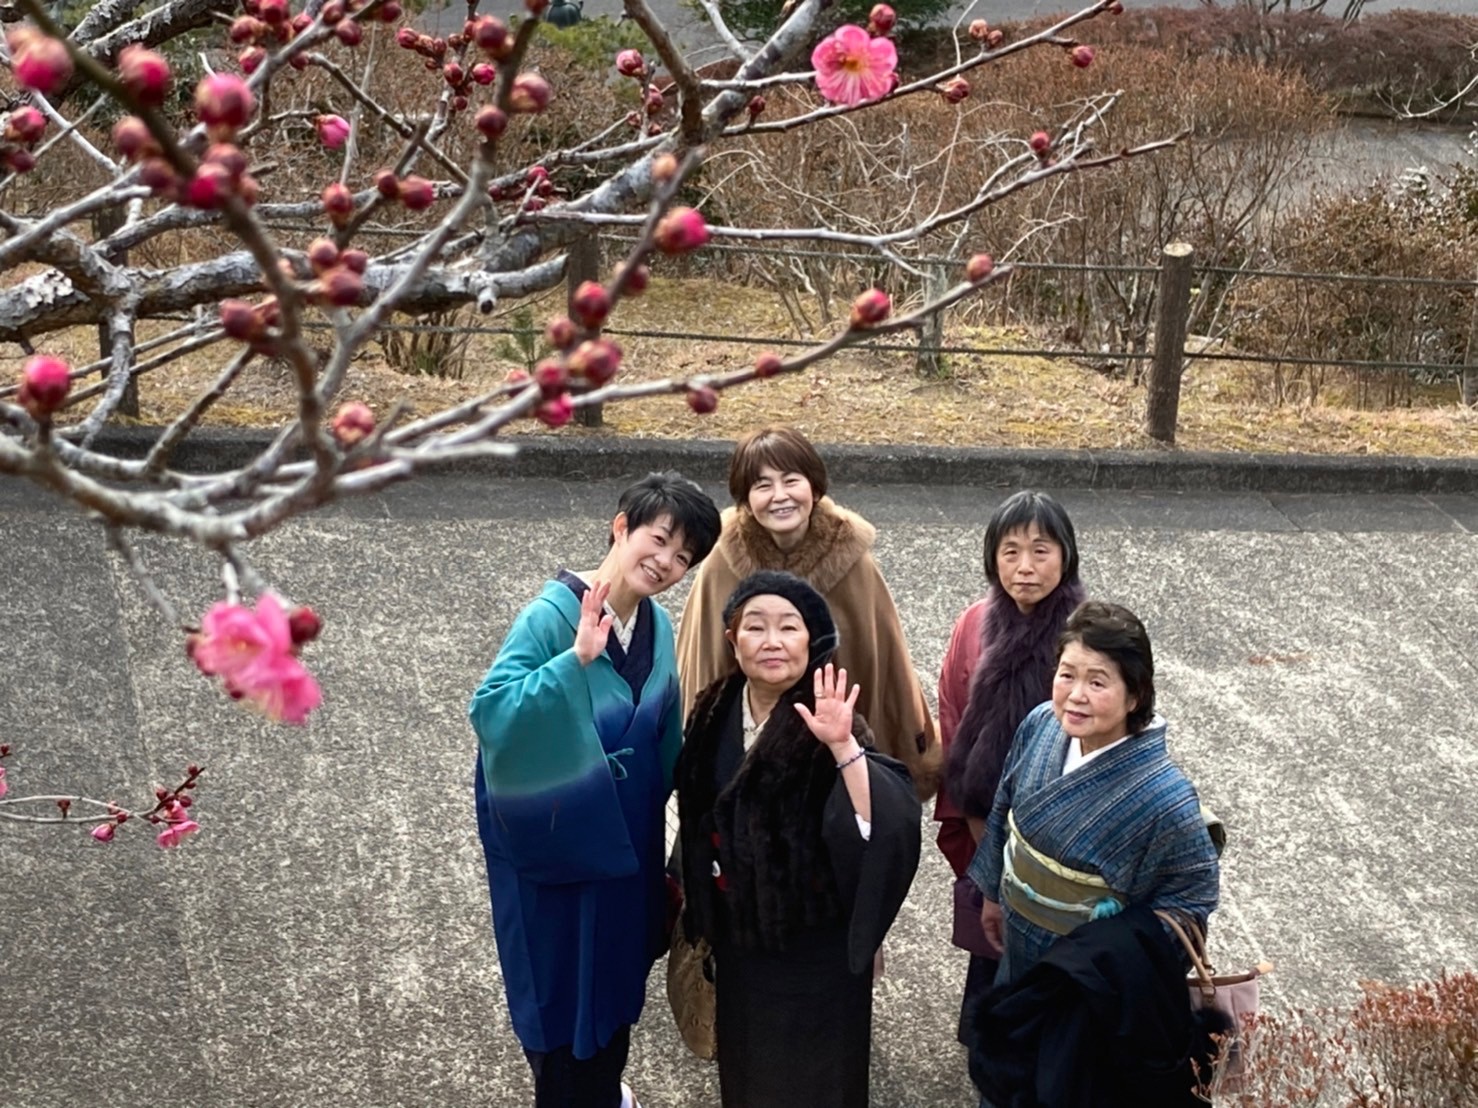 茨城県笠間市の常陸国出雲大社にで紅梅観賞をしてきました。
咲き始めの梅と着物姿の参加された皆様とで記念写真。